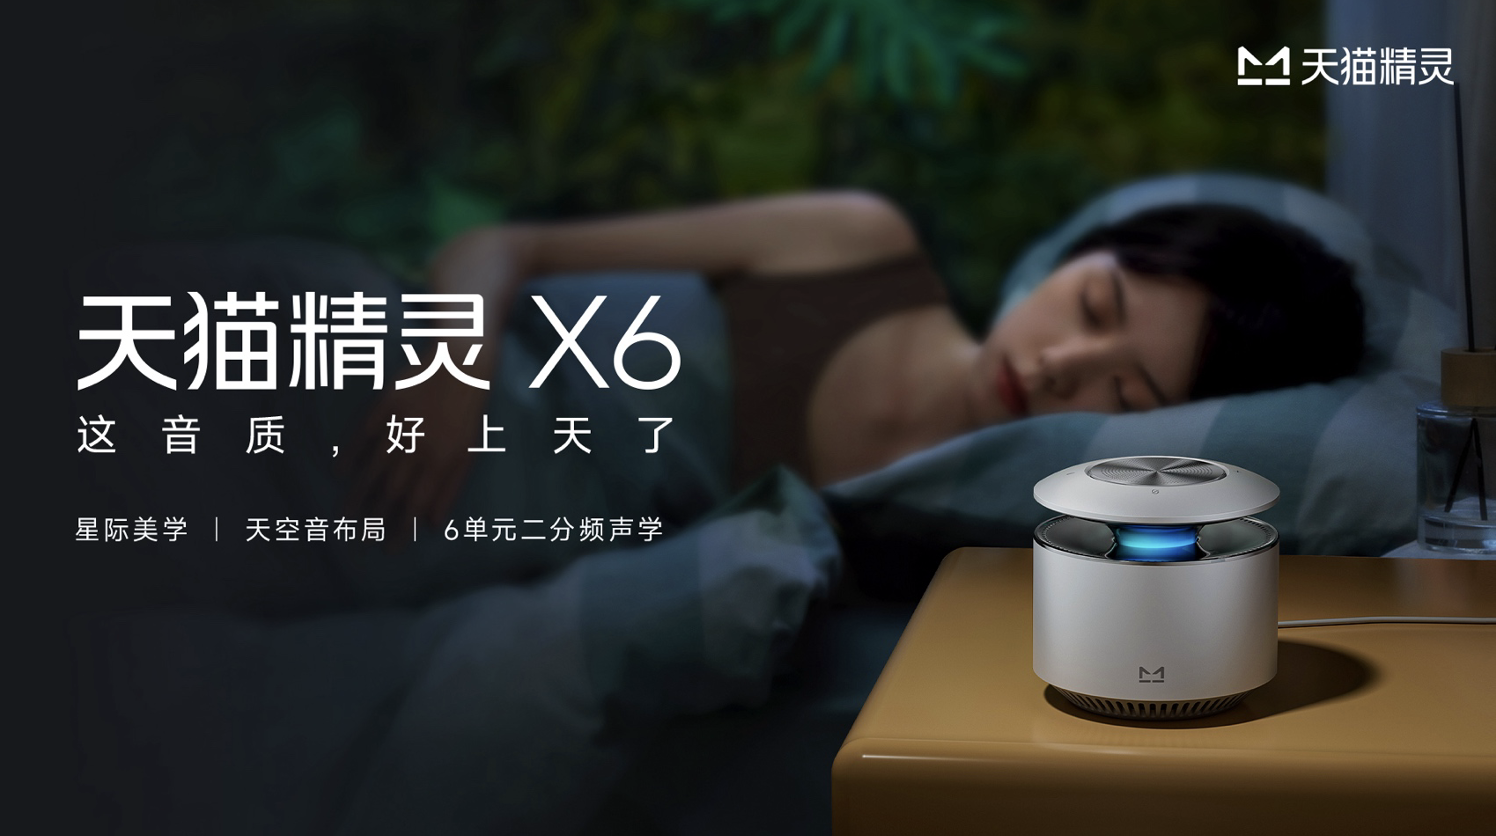 天猫精灵携全球品牌代言人周深发布 X6智能音箱